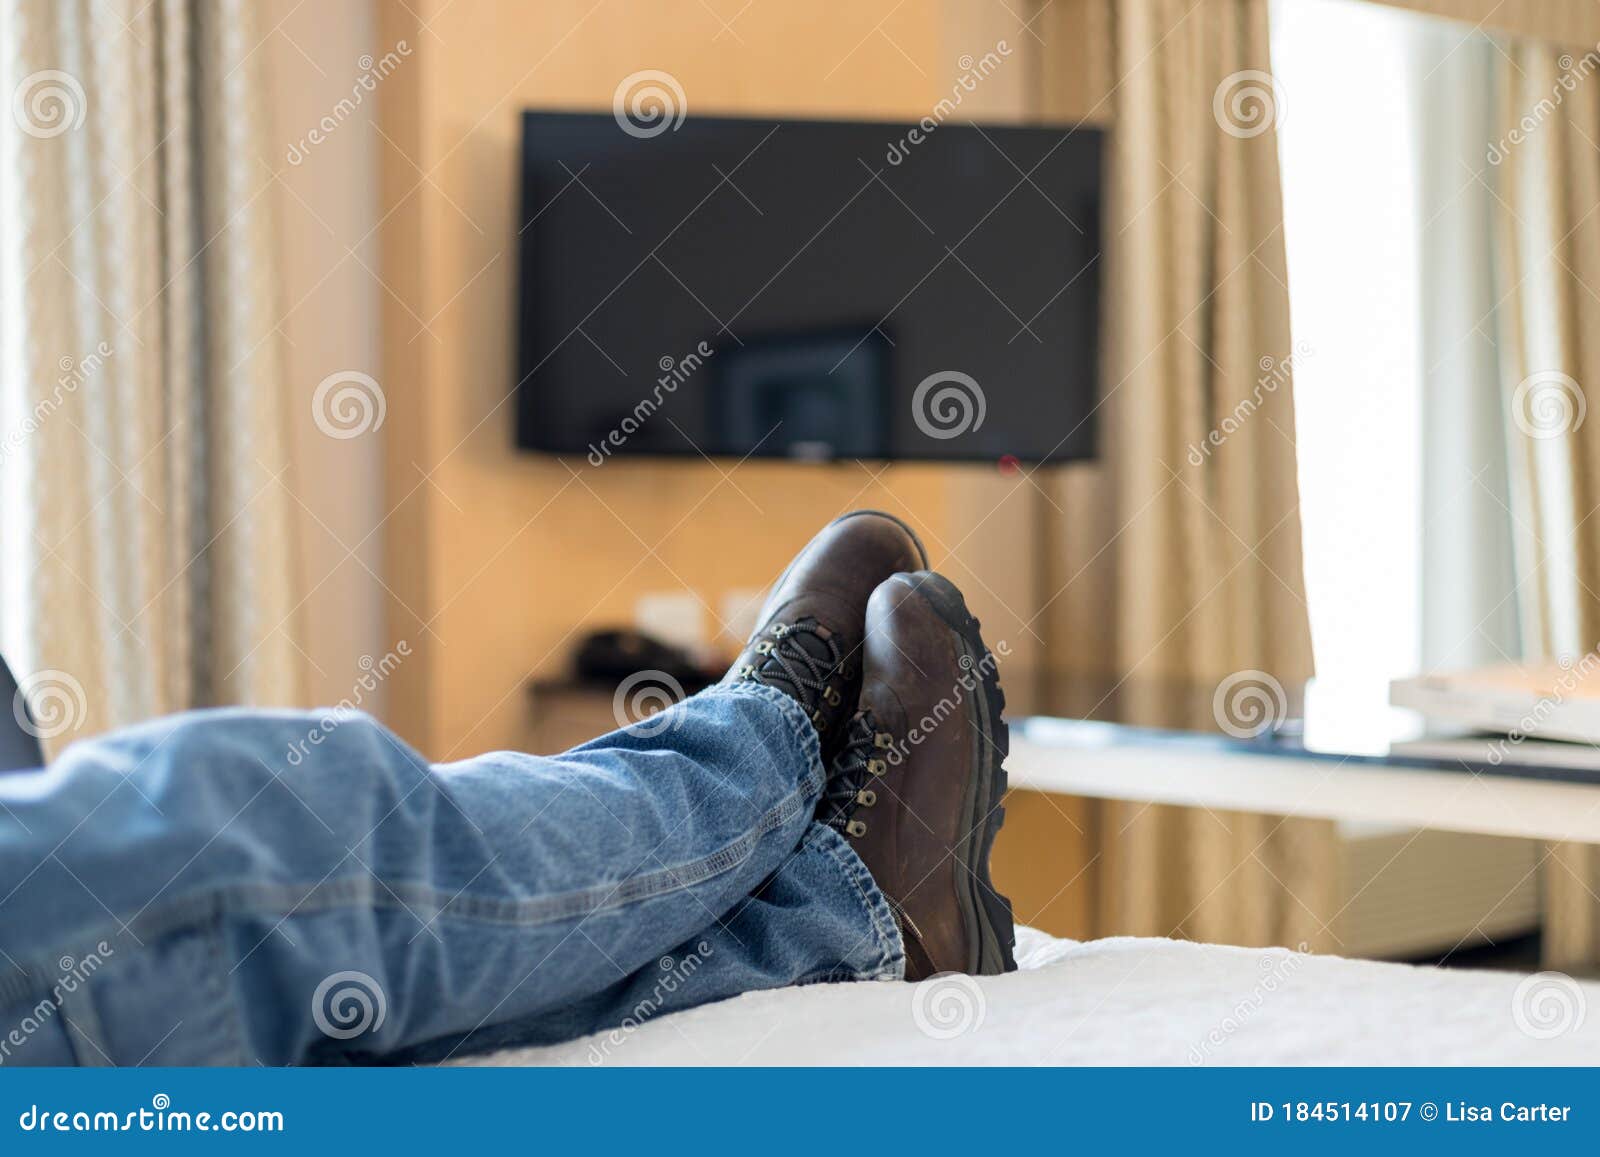 verdieping Verwaand Chronisch Een Man Die Op Bed Met Laarzen En Spijkerbroeken Ontspannen is. Stock  Afbeelding - Image of comfortabel, flat: 184514107